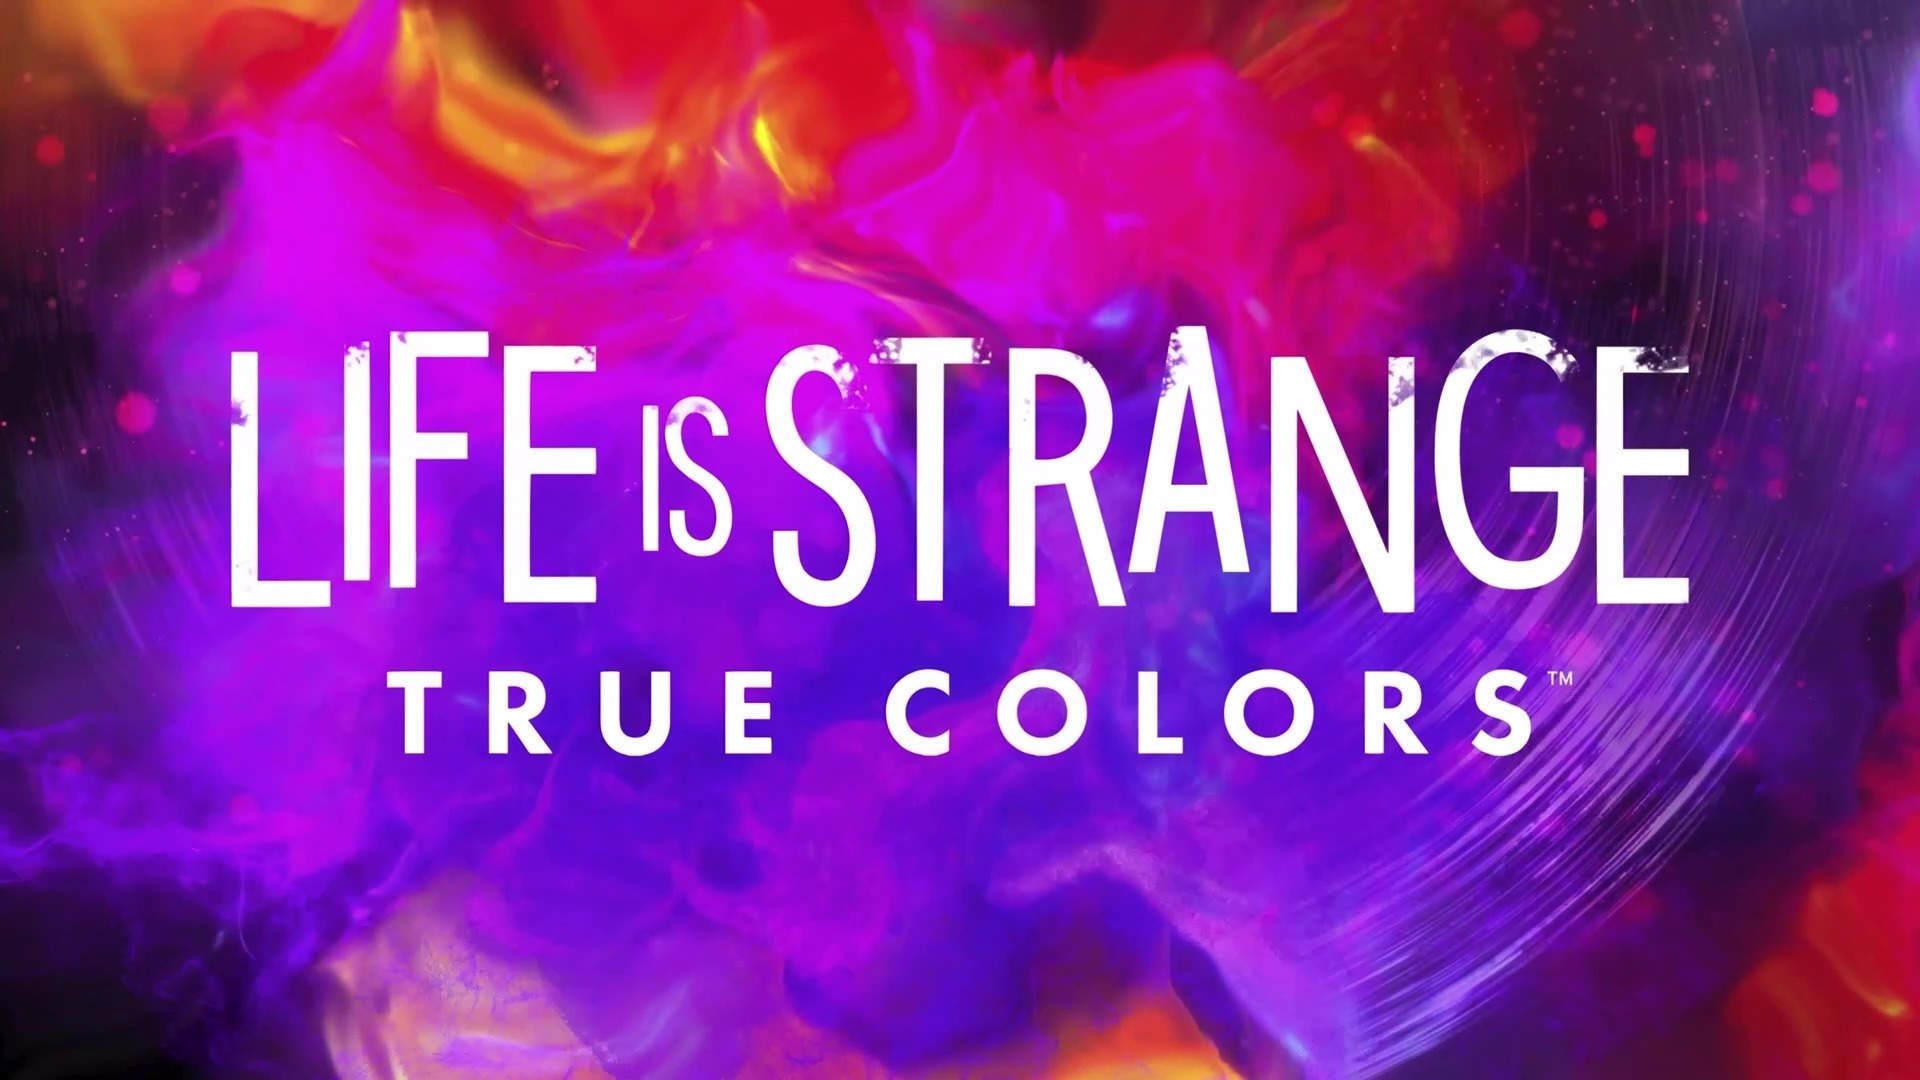 SQUARE ENIX. The Official SQUARE ENIX Website is Strange: True Colors Announce Trailer